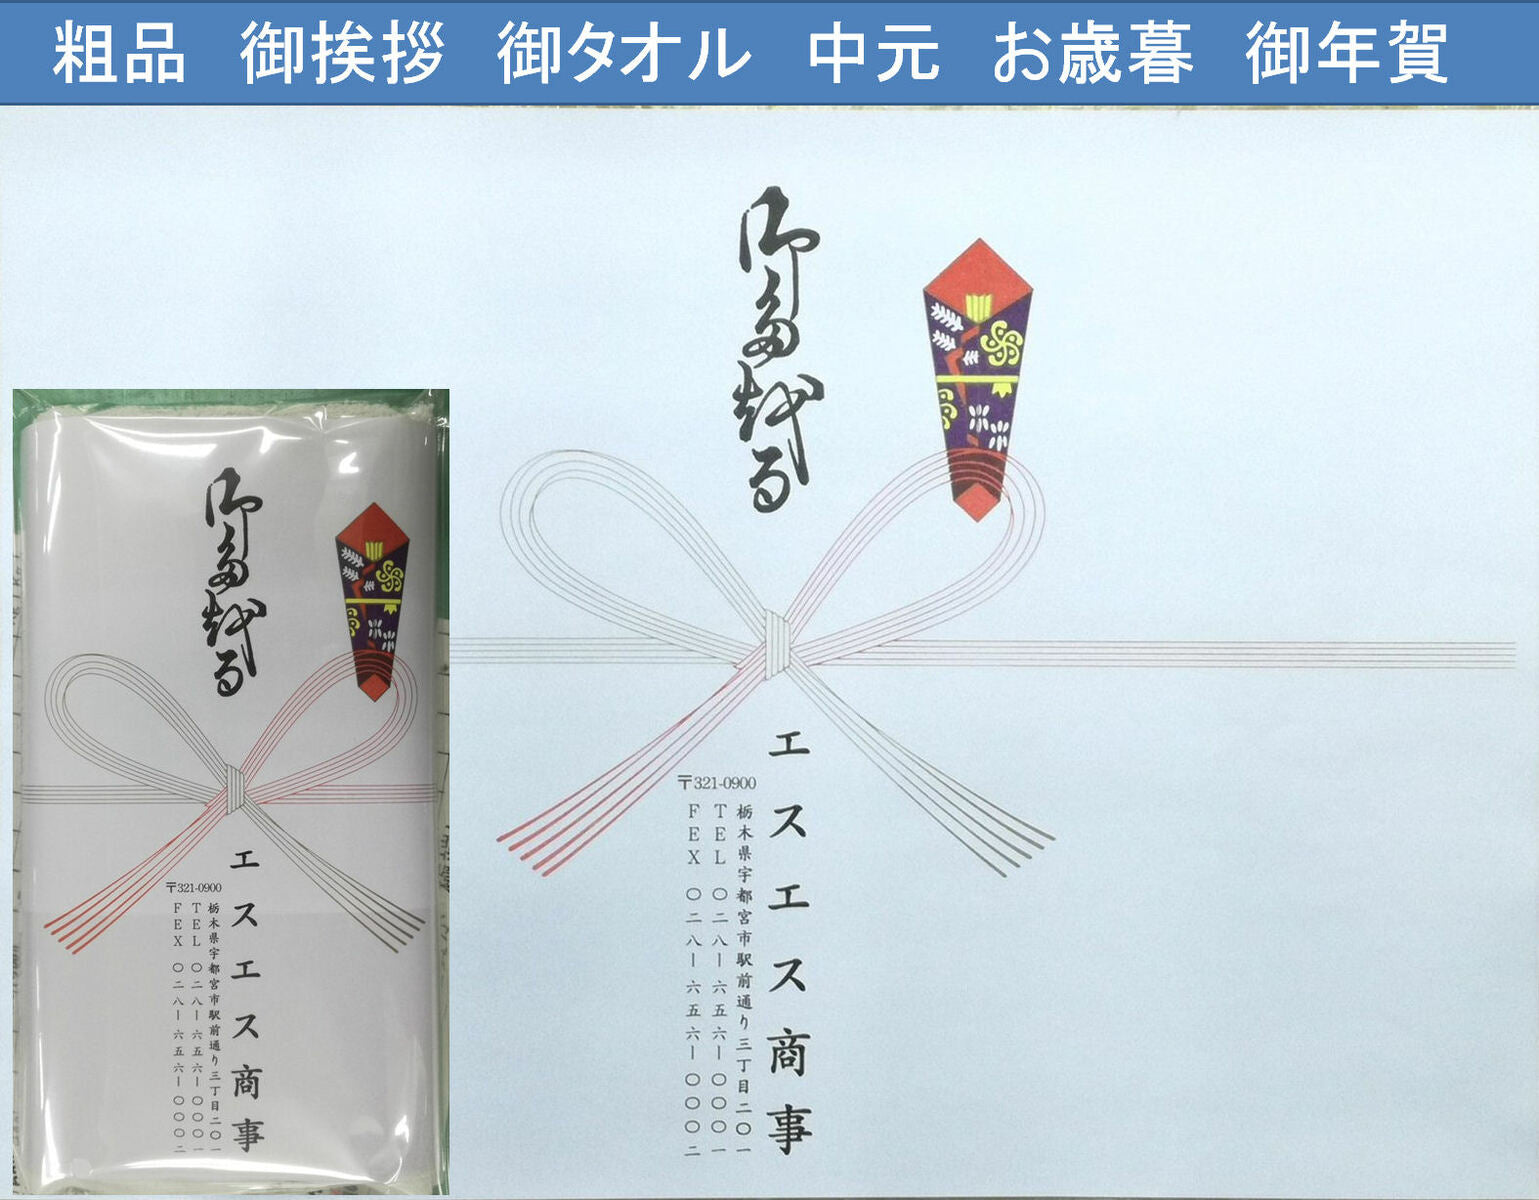 【200枚セット】日本製 200匁 お年賀タオル（挨拶タオル） のし紙・名刺入れ付き